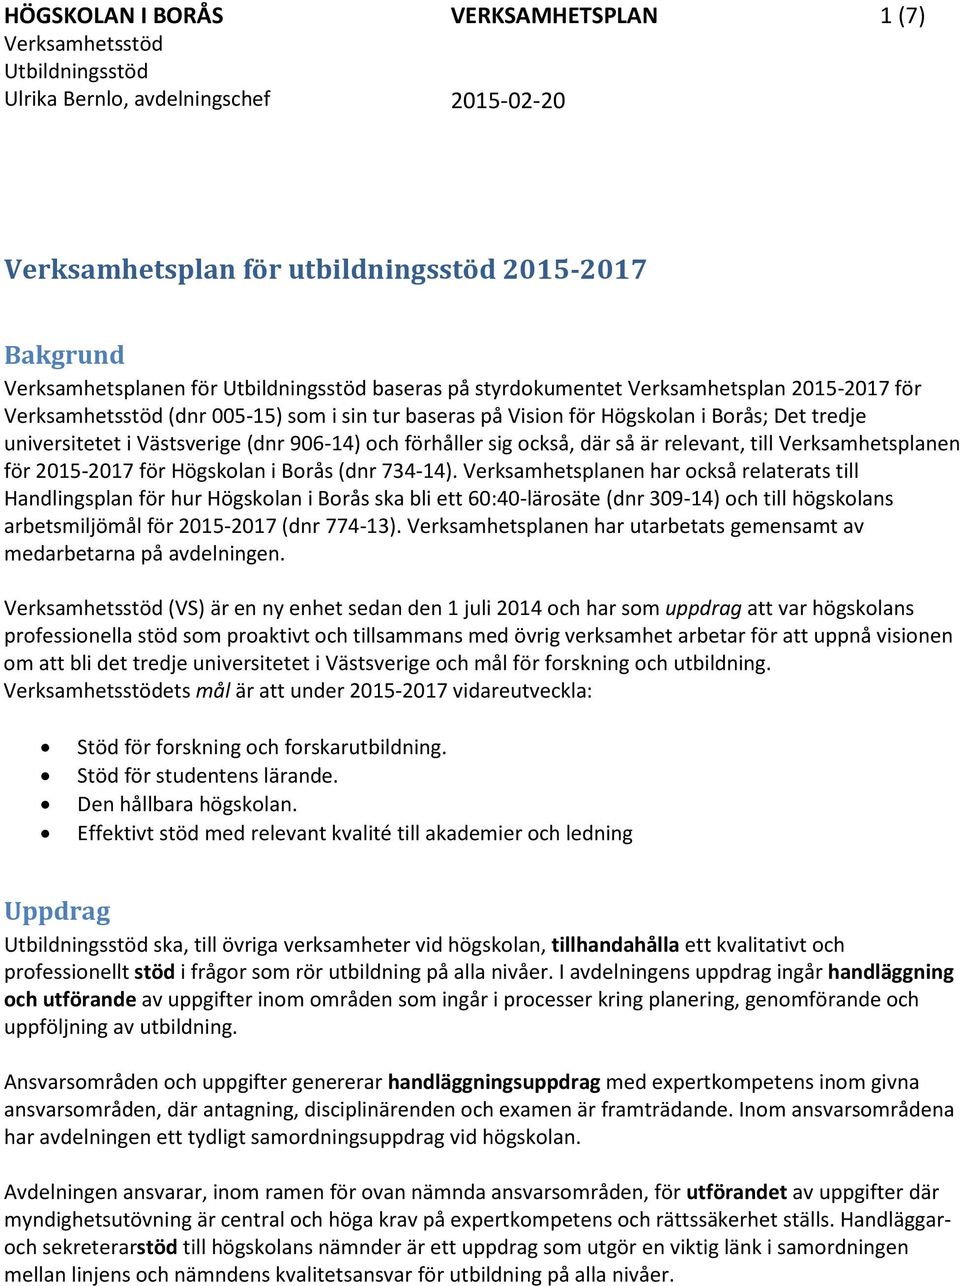 906-14) och förhåller sig också, där så är relevant, till Verksamhetsplanen för 2015-2017 för Högskolan i Borås (dnr 734-14).